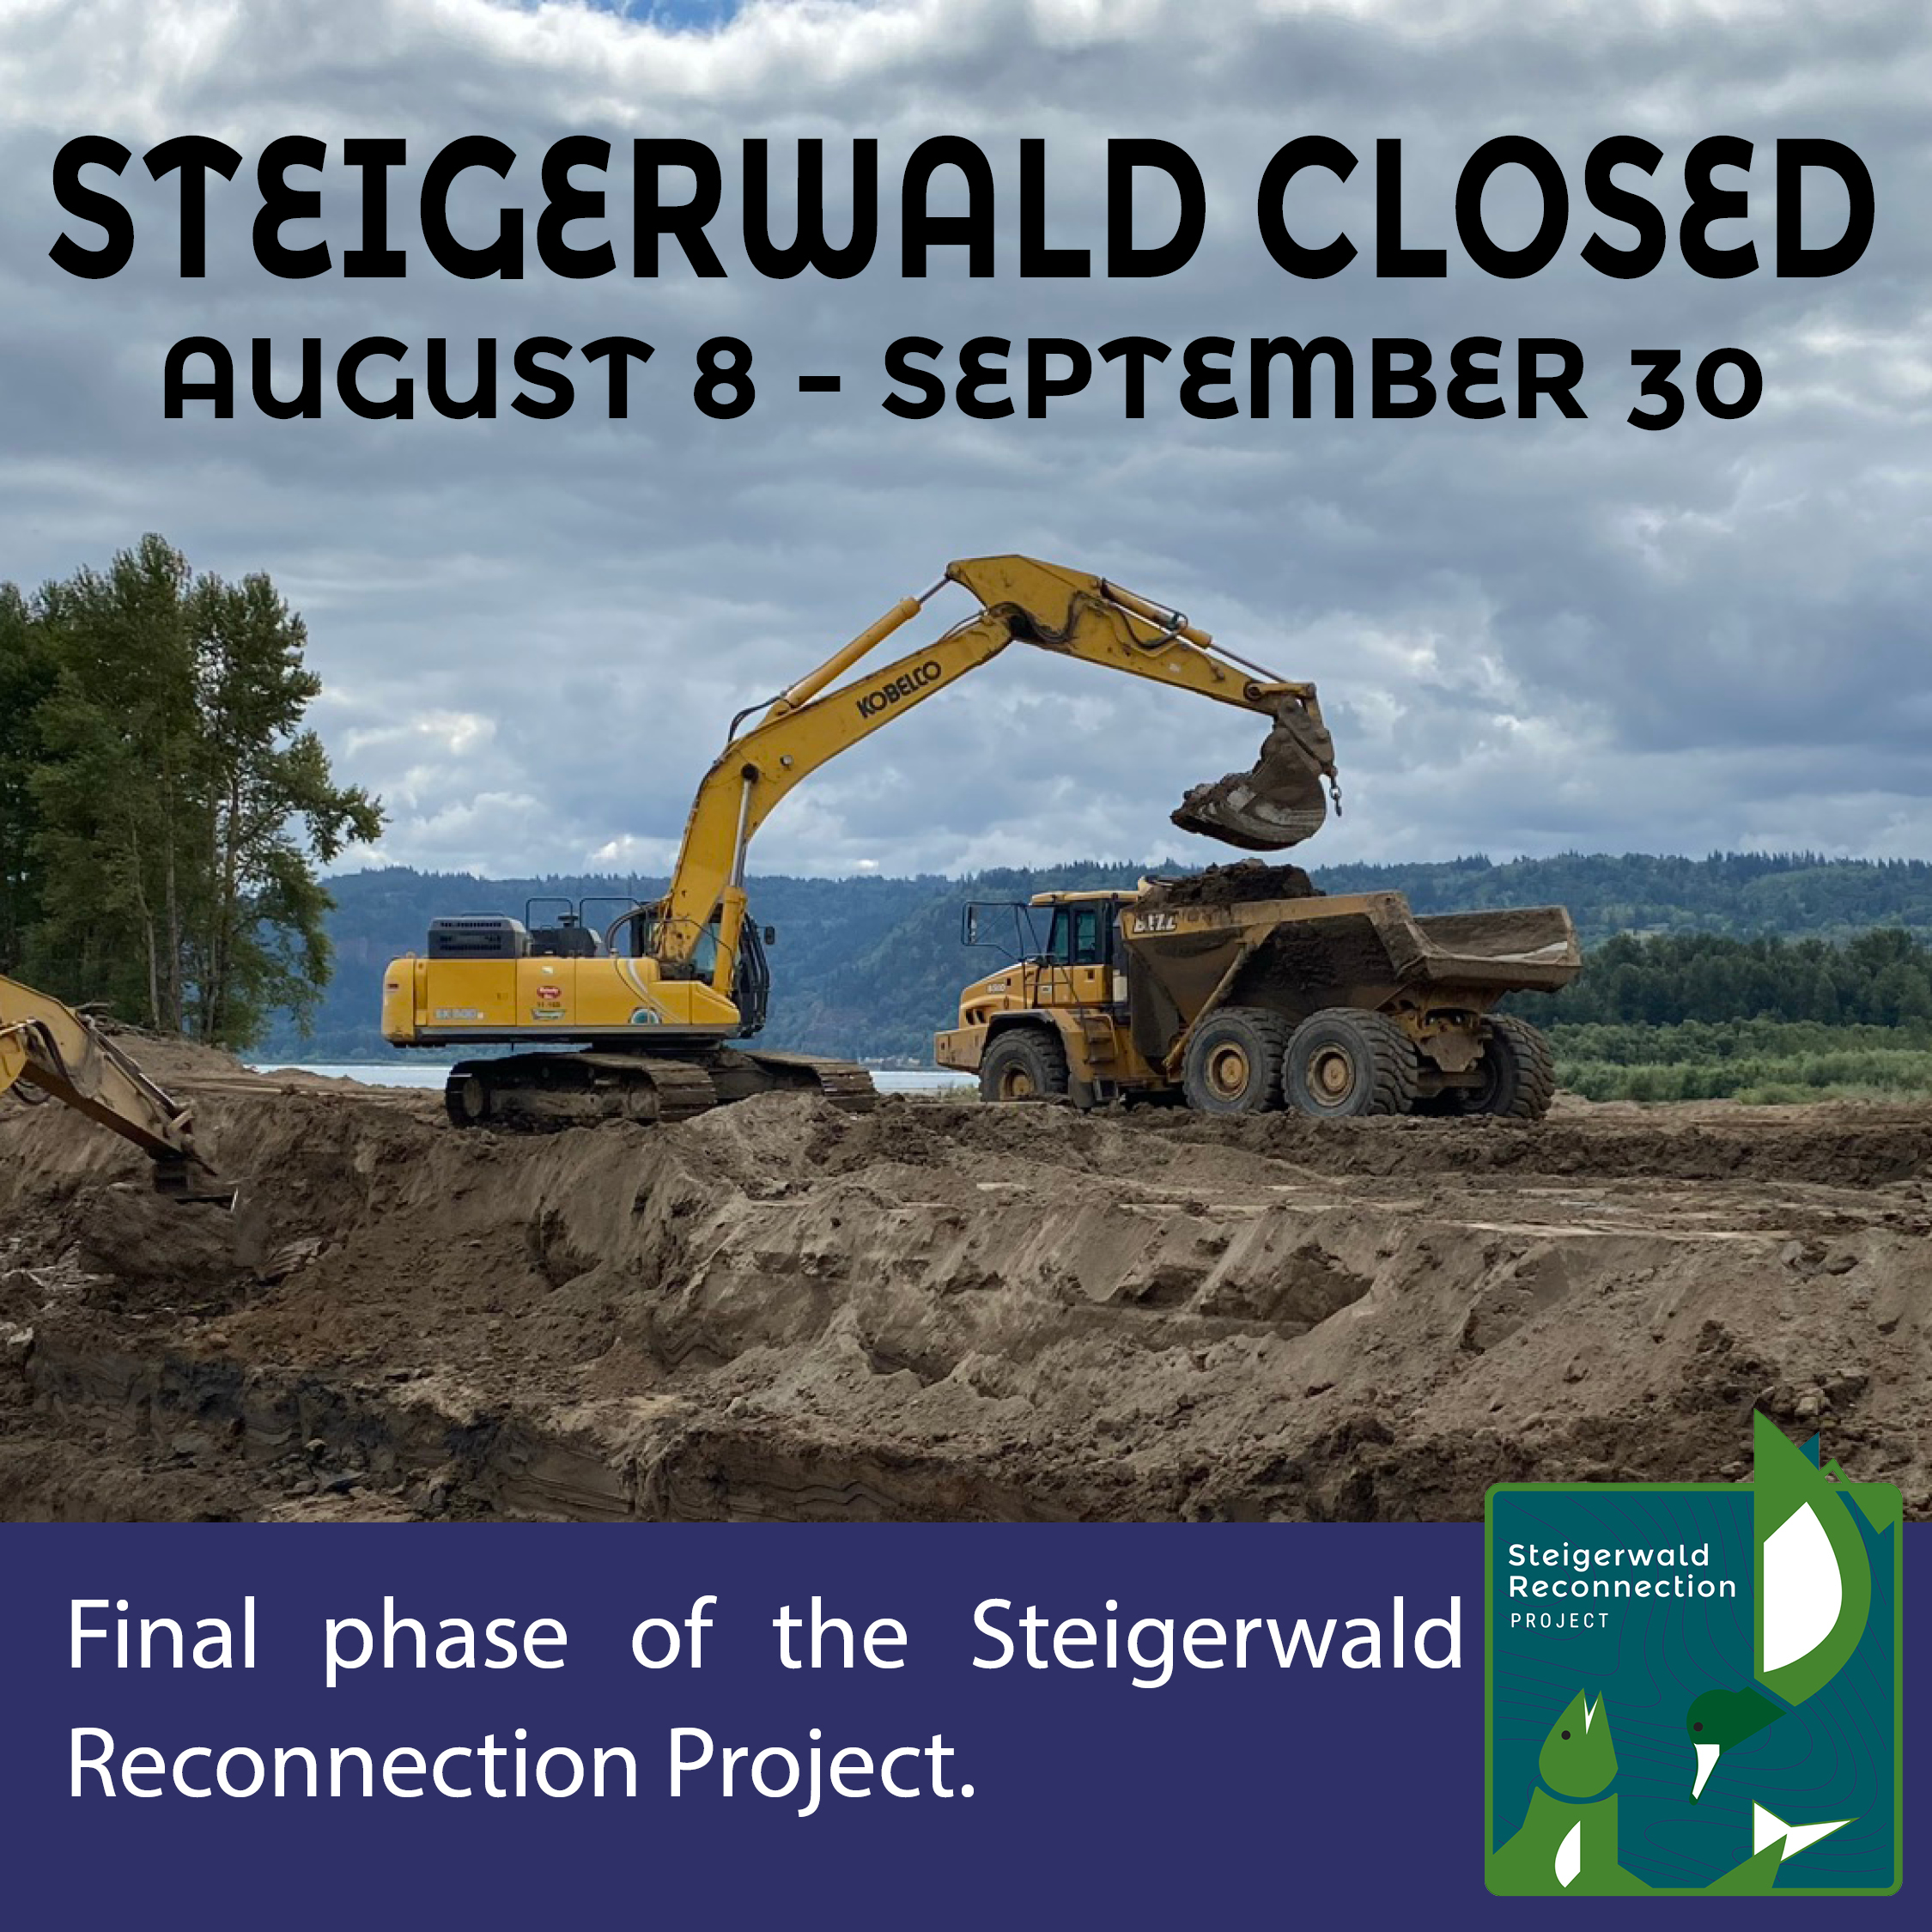 Steigerwald closure_Aug 8-Sept 30